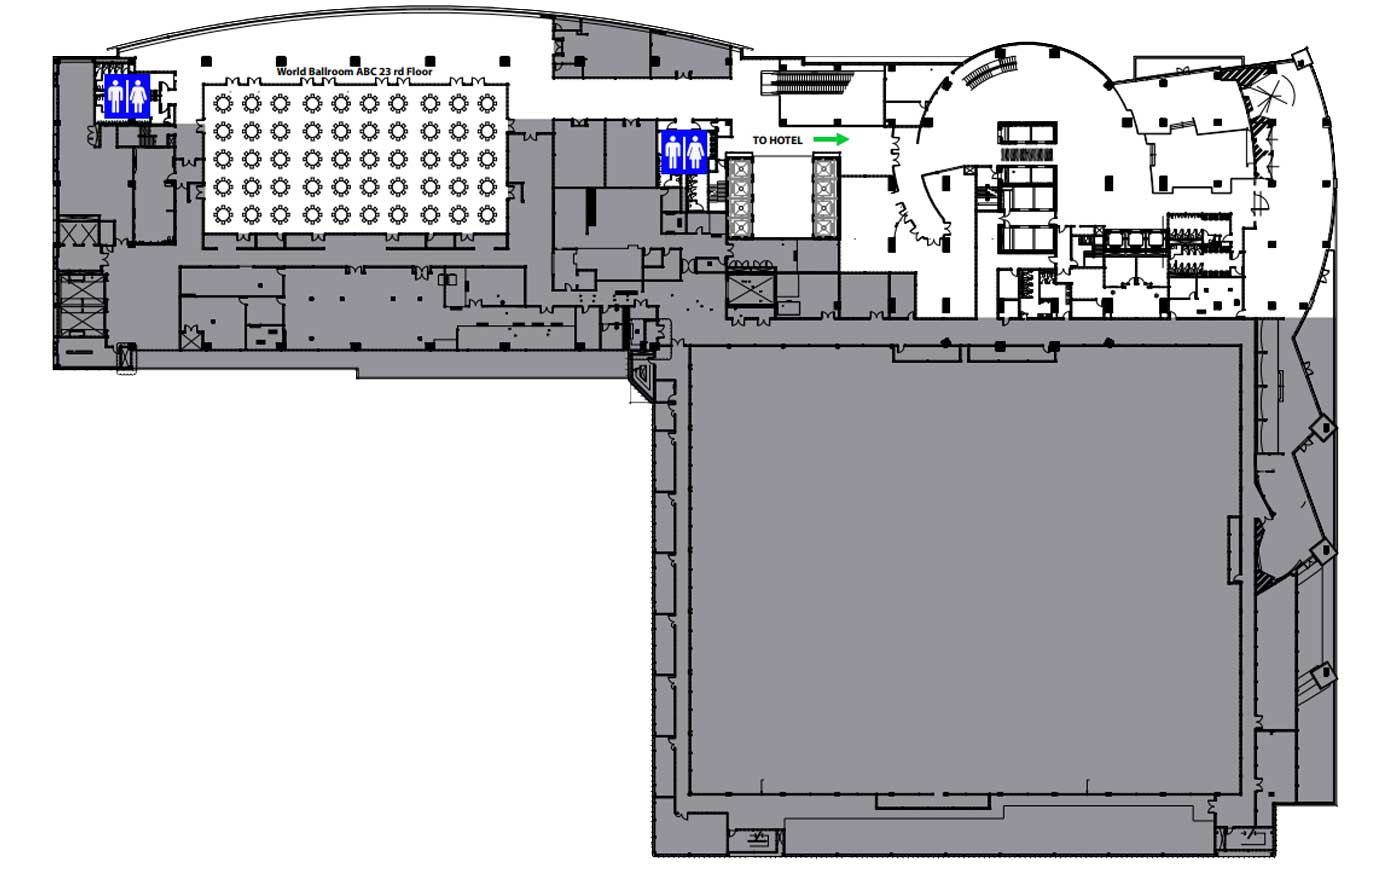 General Floor Plan 23rd Floor